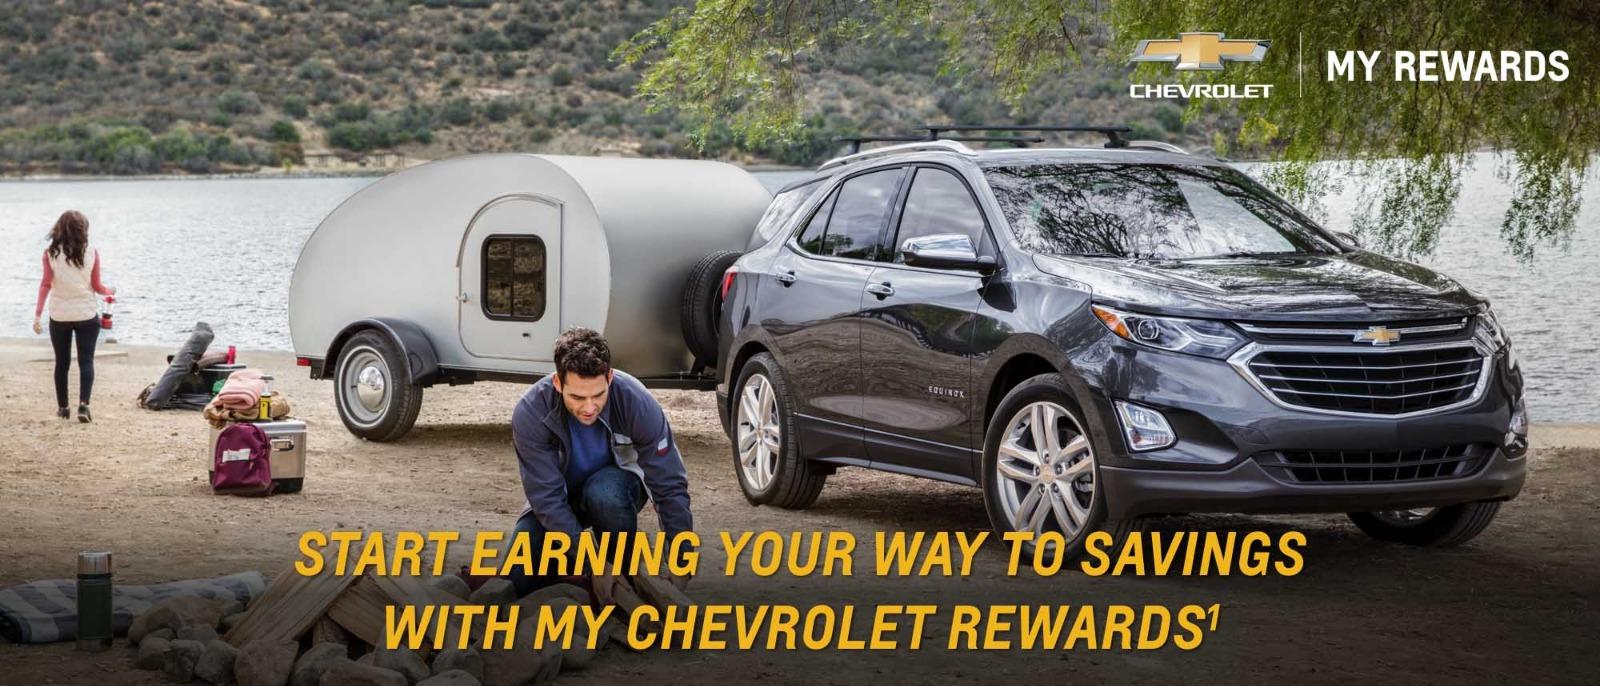 My Chevrolet Rewards